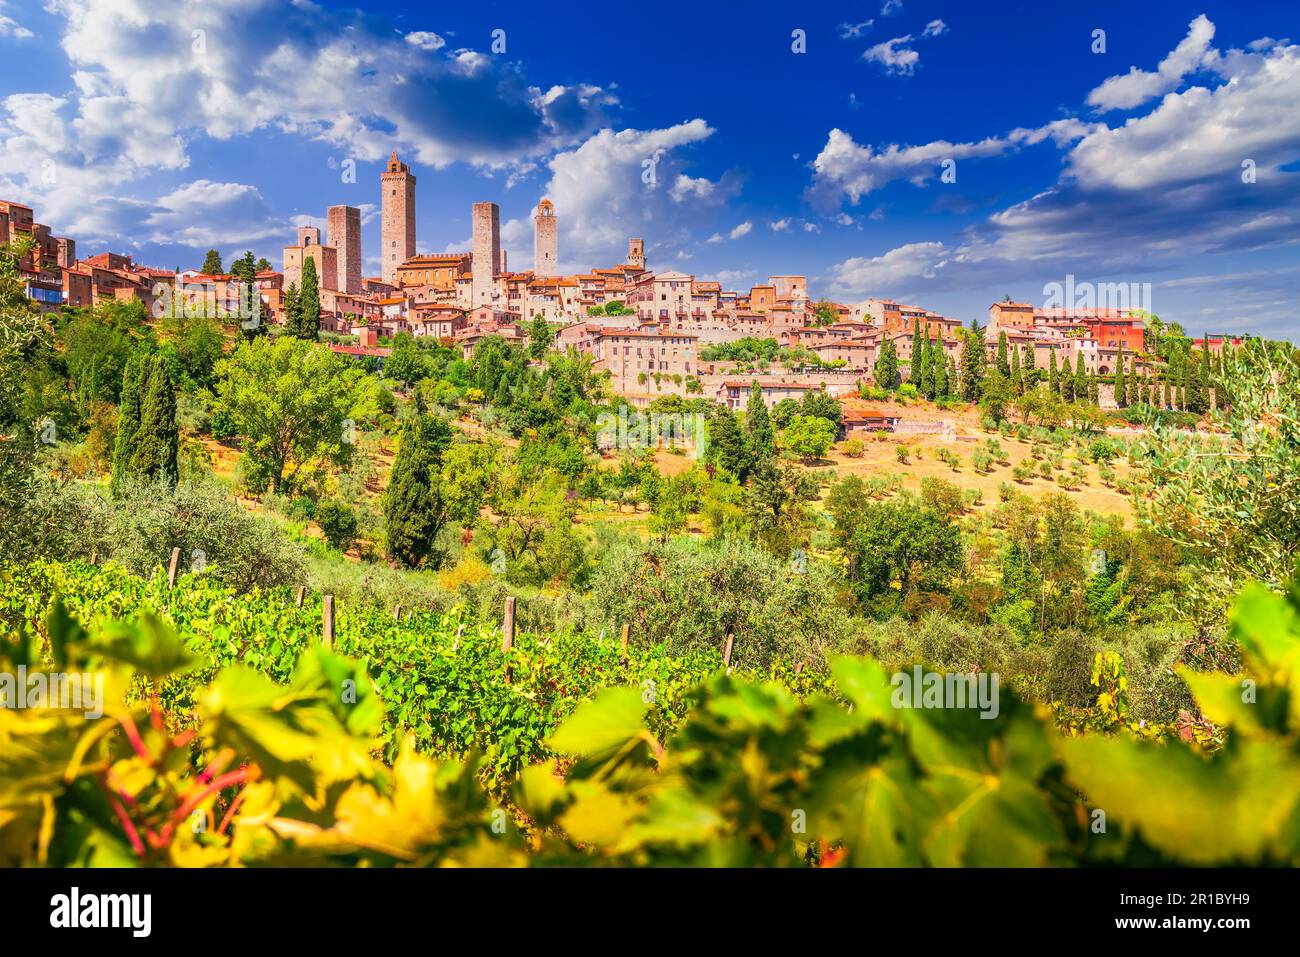 San Gimignano, Italien. Mittelalterliche Skyline der Stadt und berühmte Türme, sonniger Tag. Italienischer Weinberg im Vordergrund. Toskana, einer der berühmten Orte Europas. Stockfoto